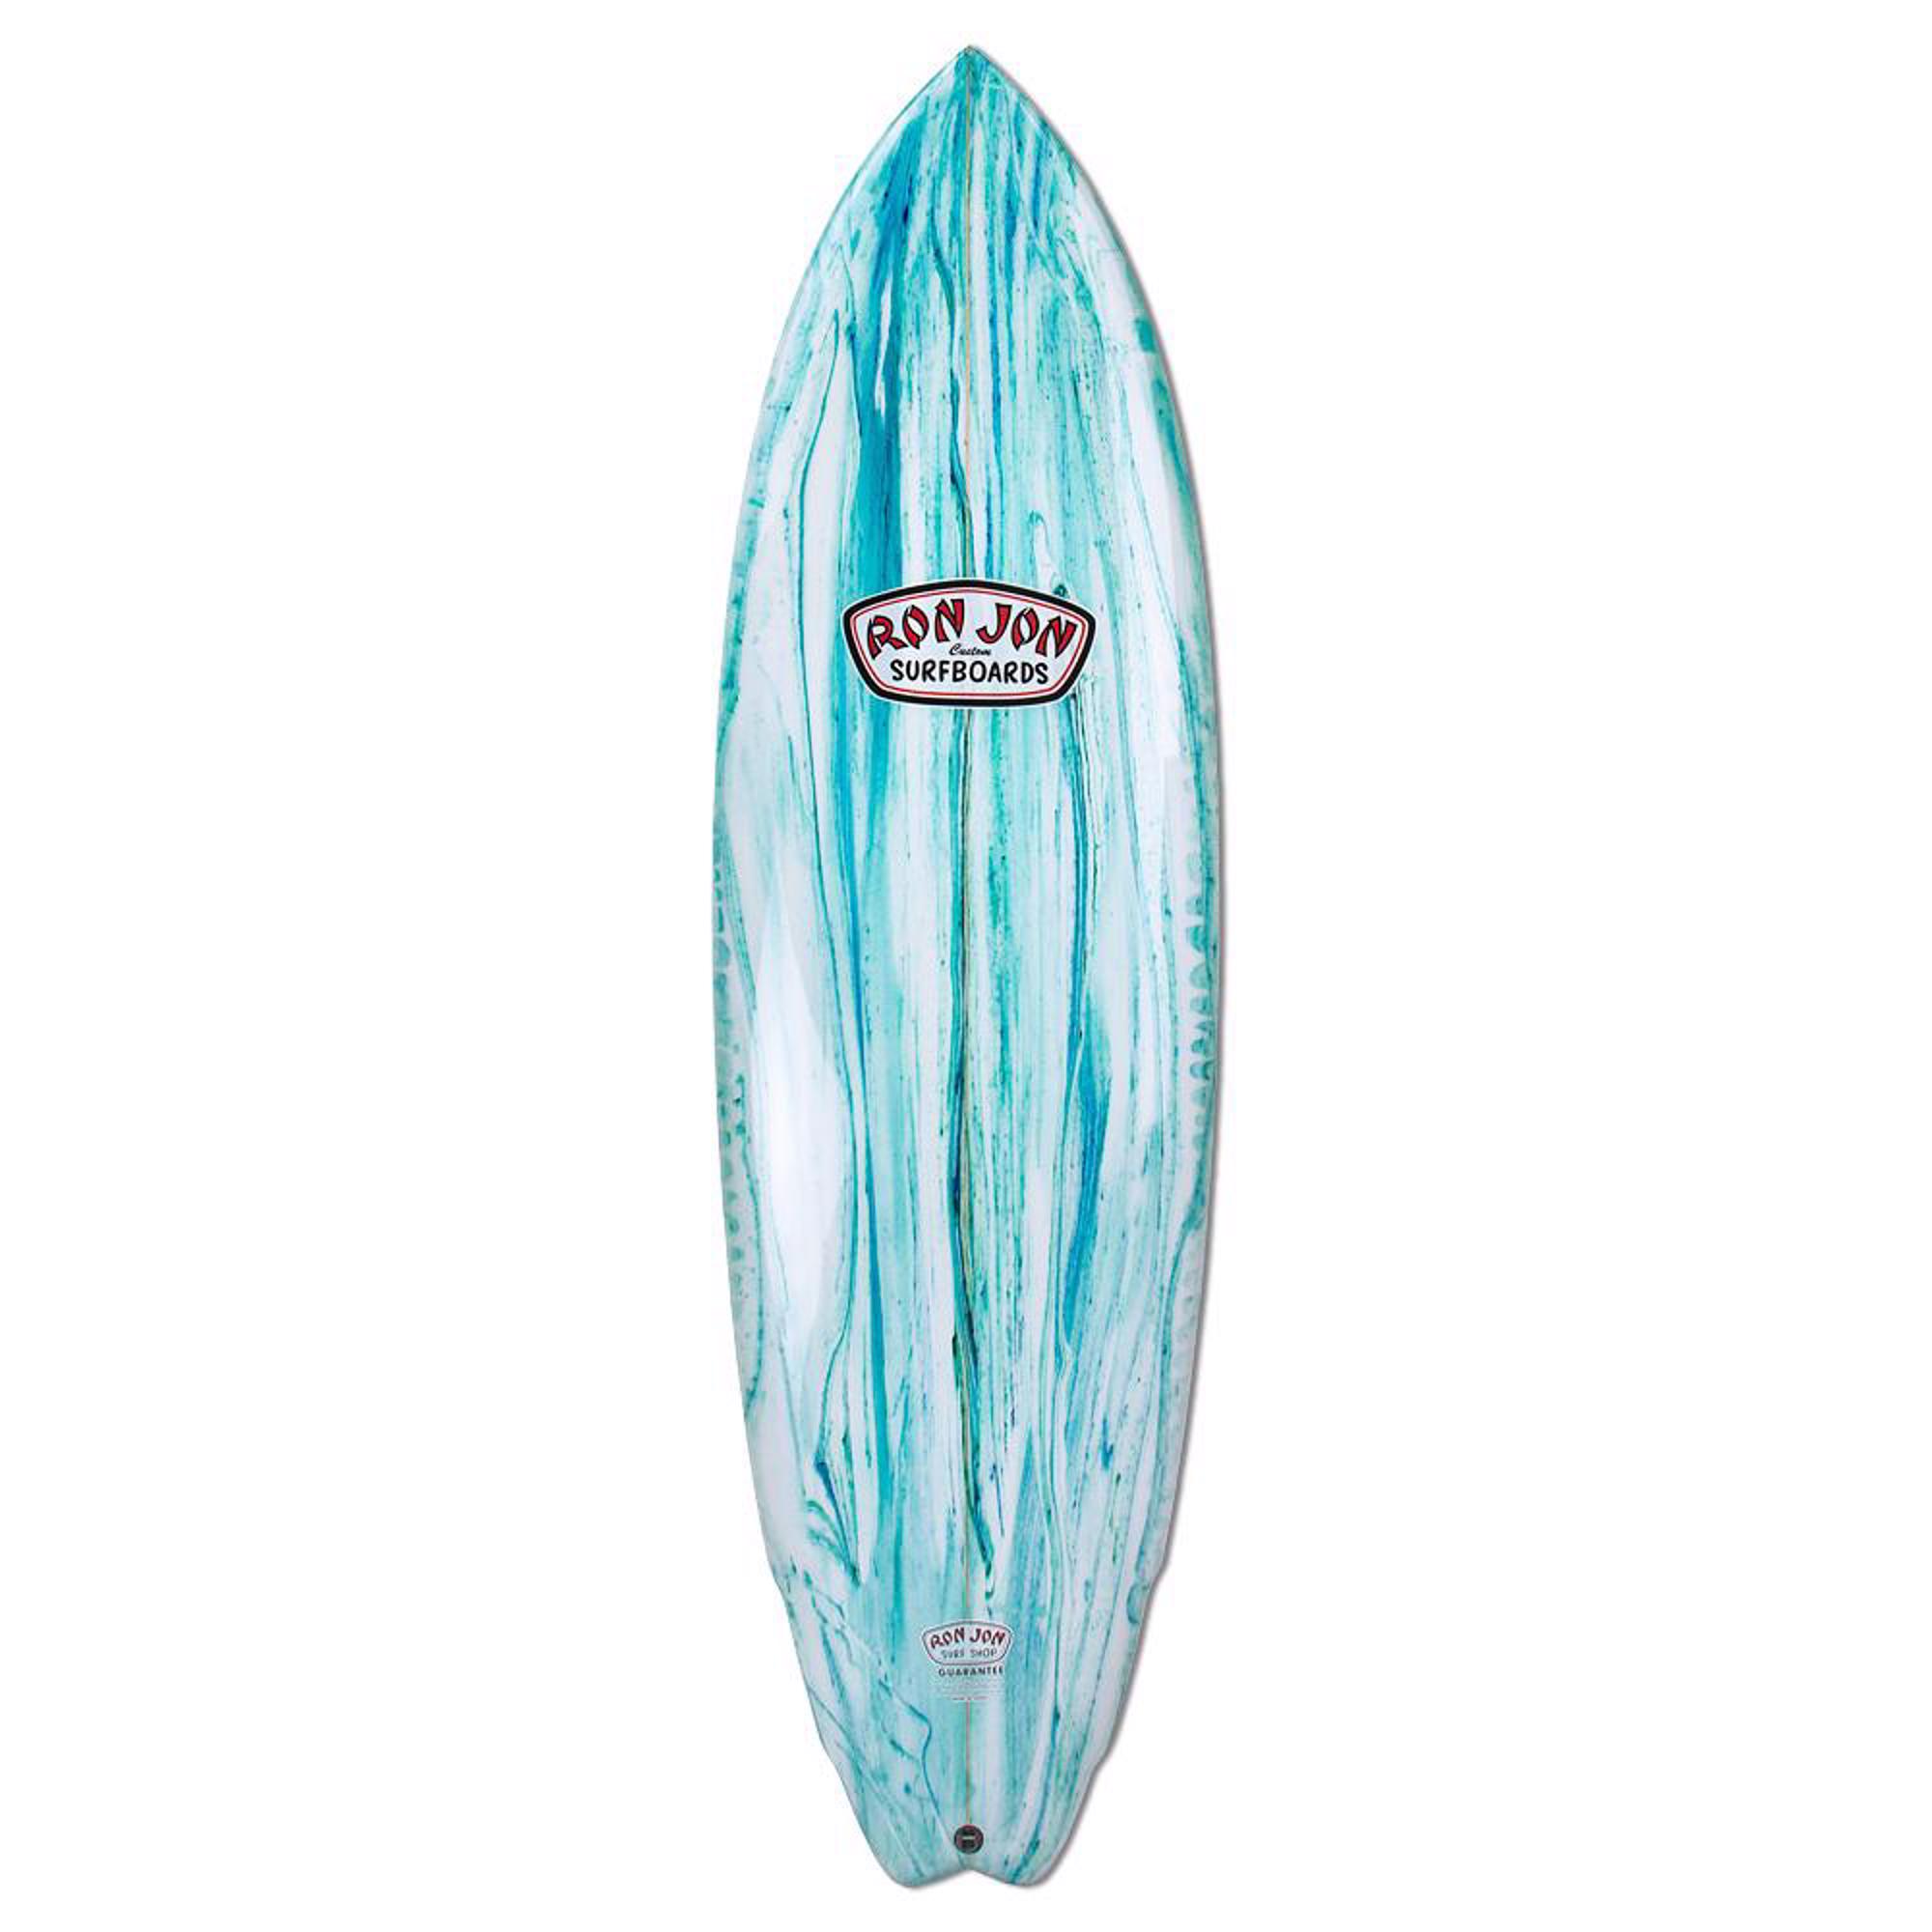 Ron Jon 6 ft 6 in Wide Swallow Tail Surfboard - 001 - Surf Gear